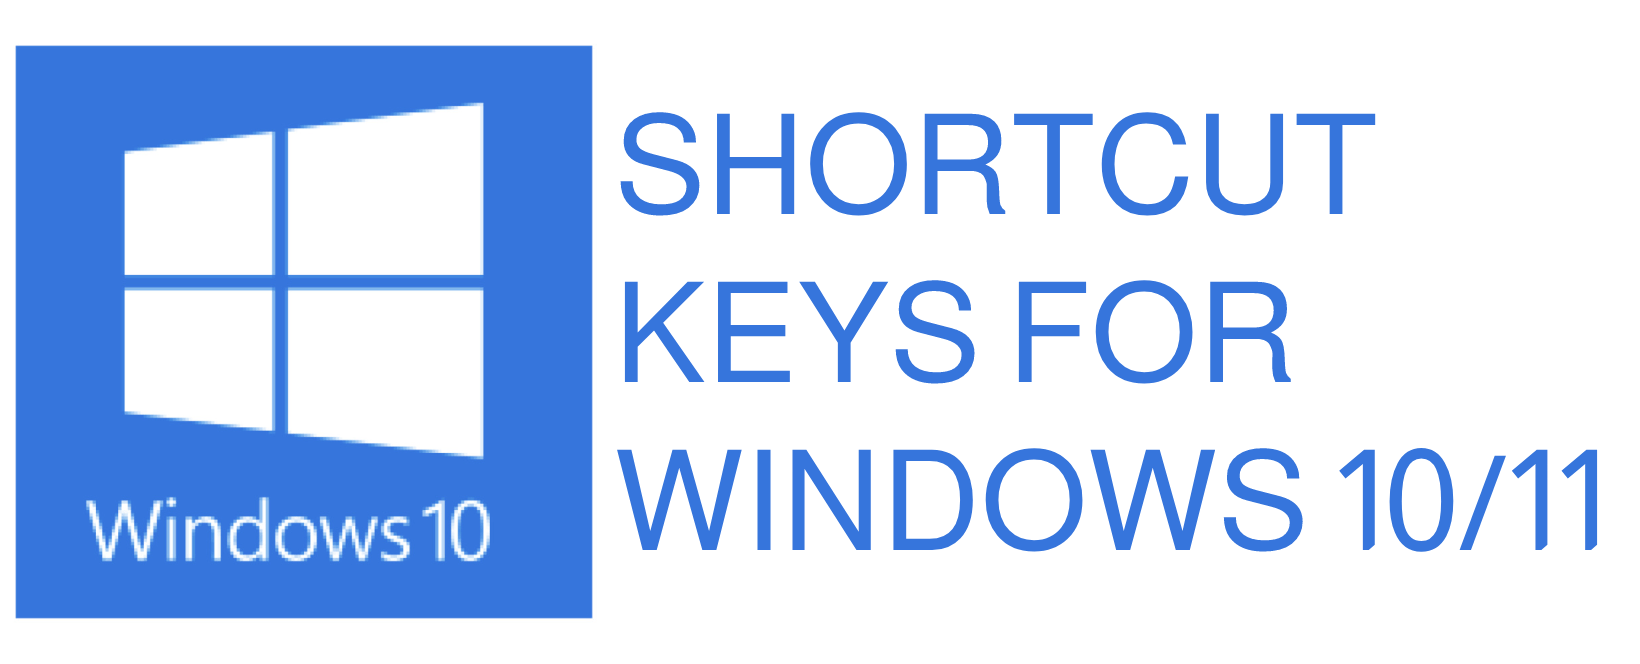 Windows keyboard basic shortcuts for Windows 10/11